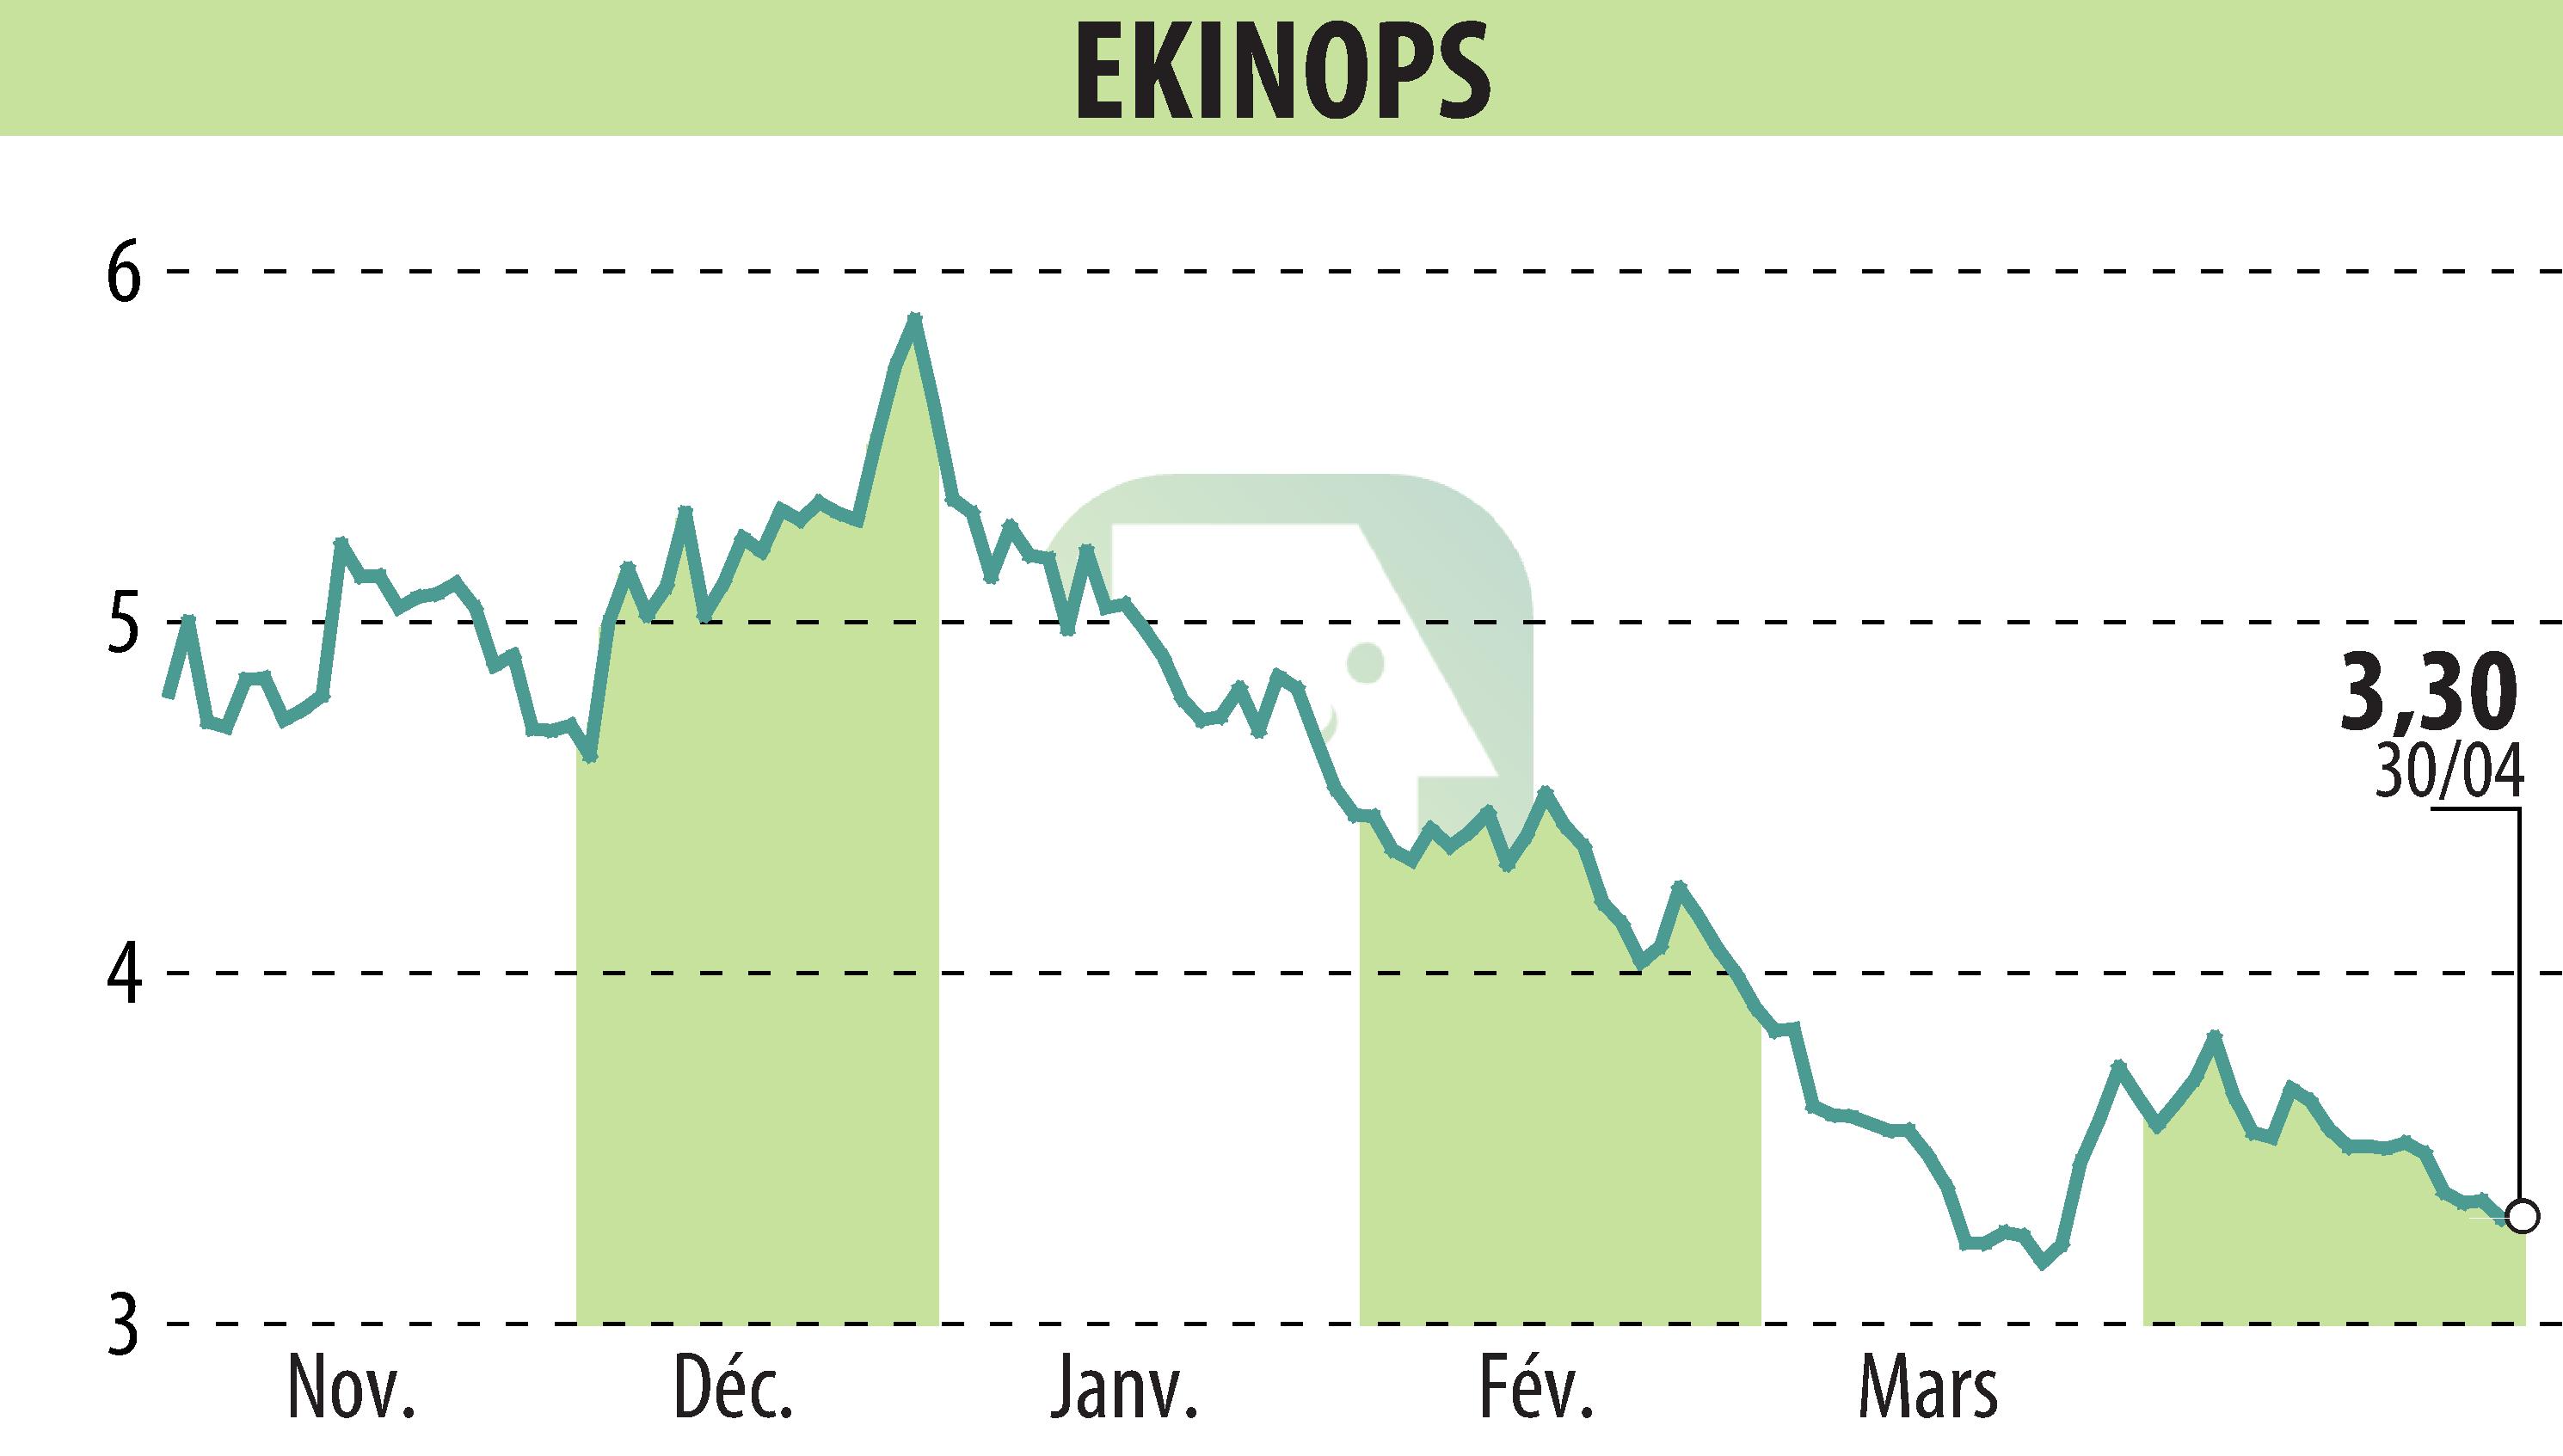 Stock price chart of EKINOPS (EPA:EKI) showing fluctuations.